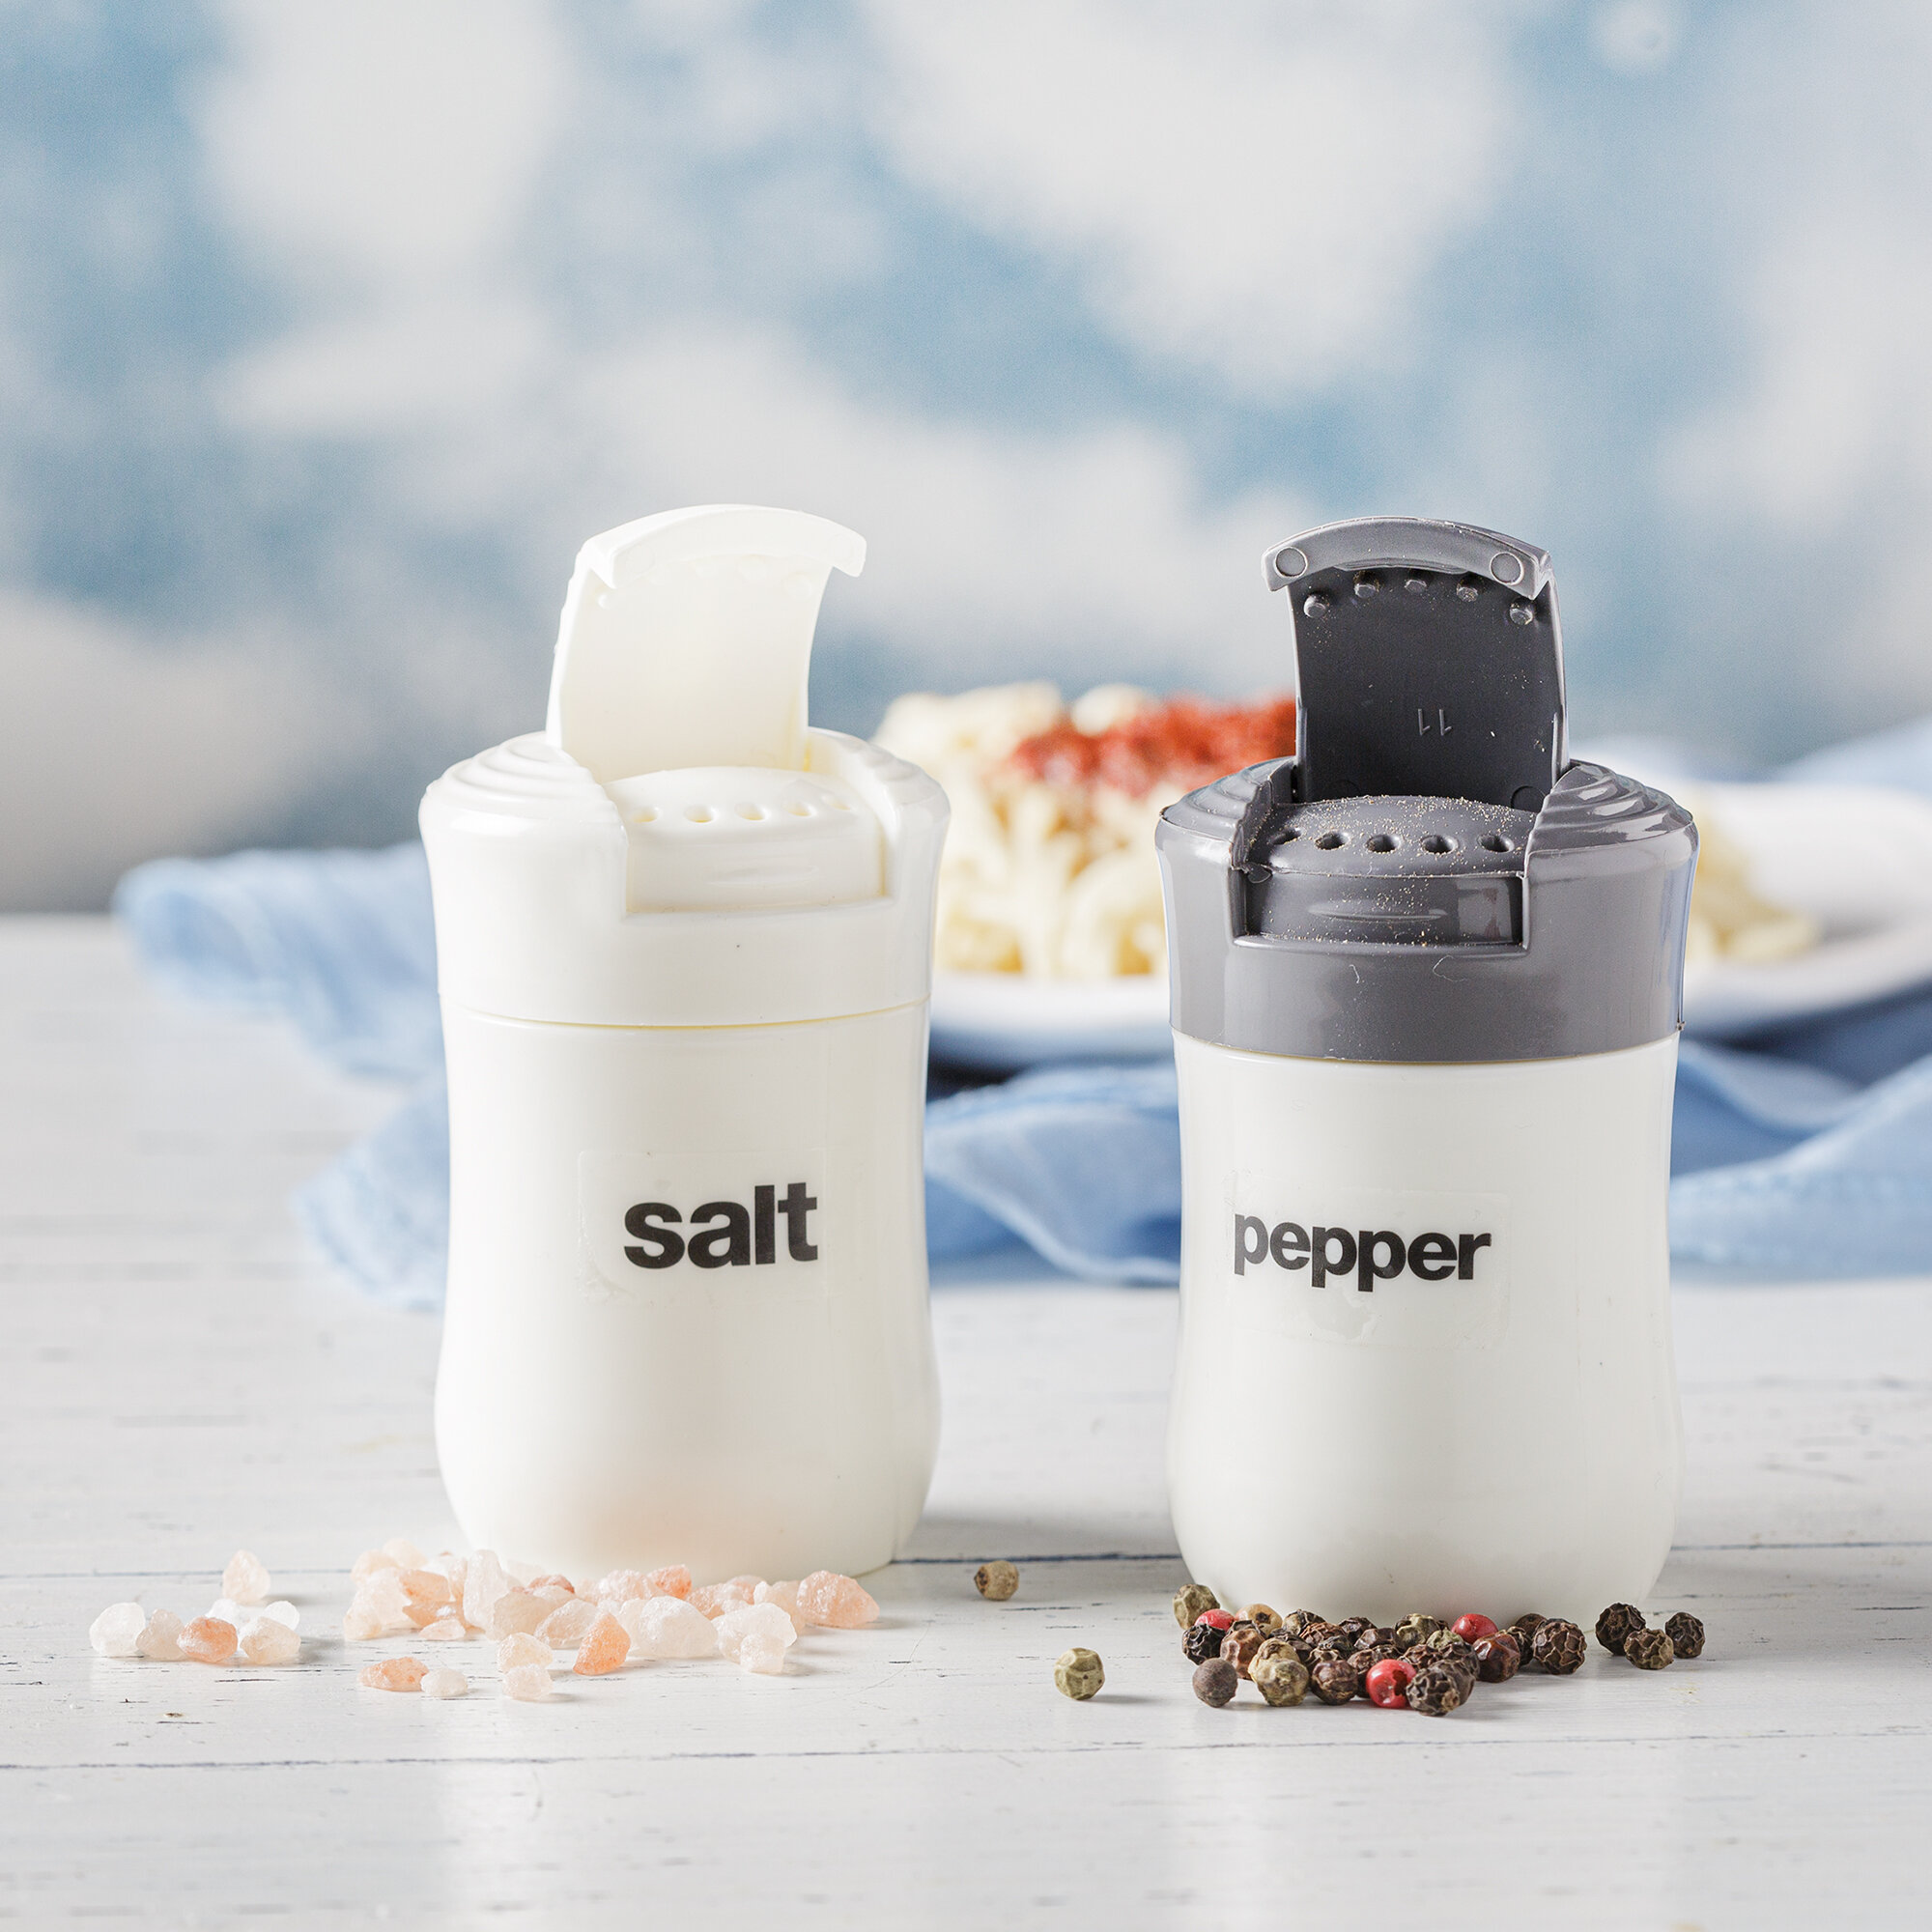 KKC HOME ACCENTS Wooden Salt and Pepper Grinder Set 6 inch,Salt